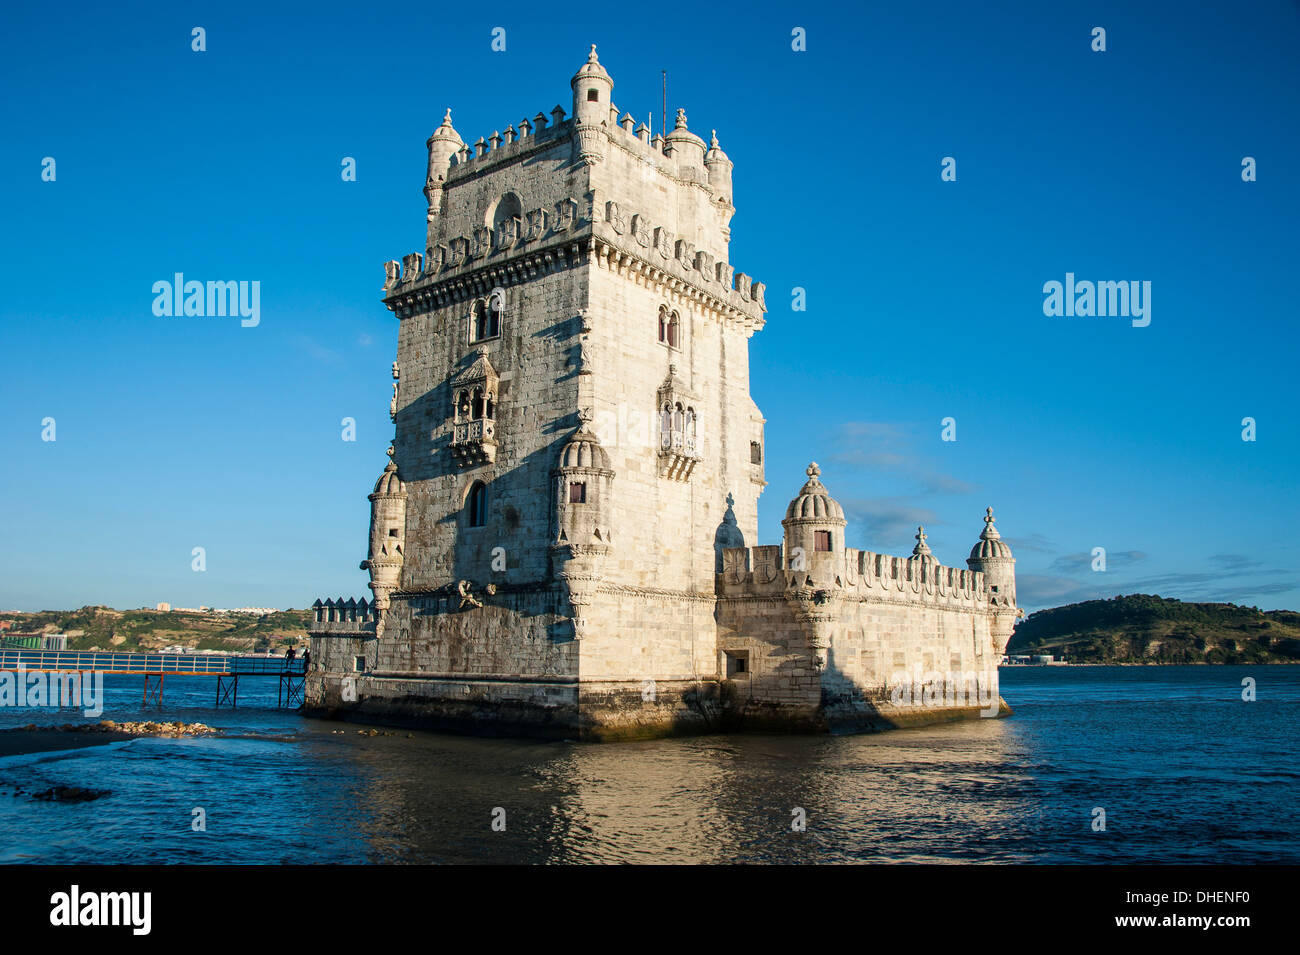 La tour de Belem, UNESCO World Heritage Site, Lisbonne, Portugal, Europe Banque D'Images